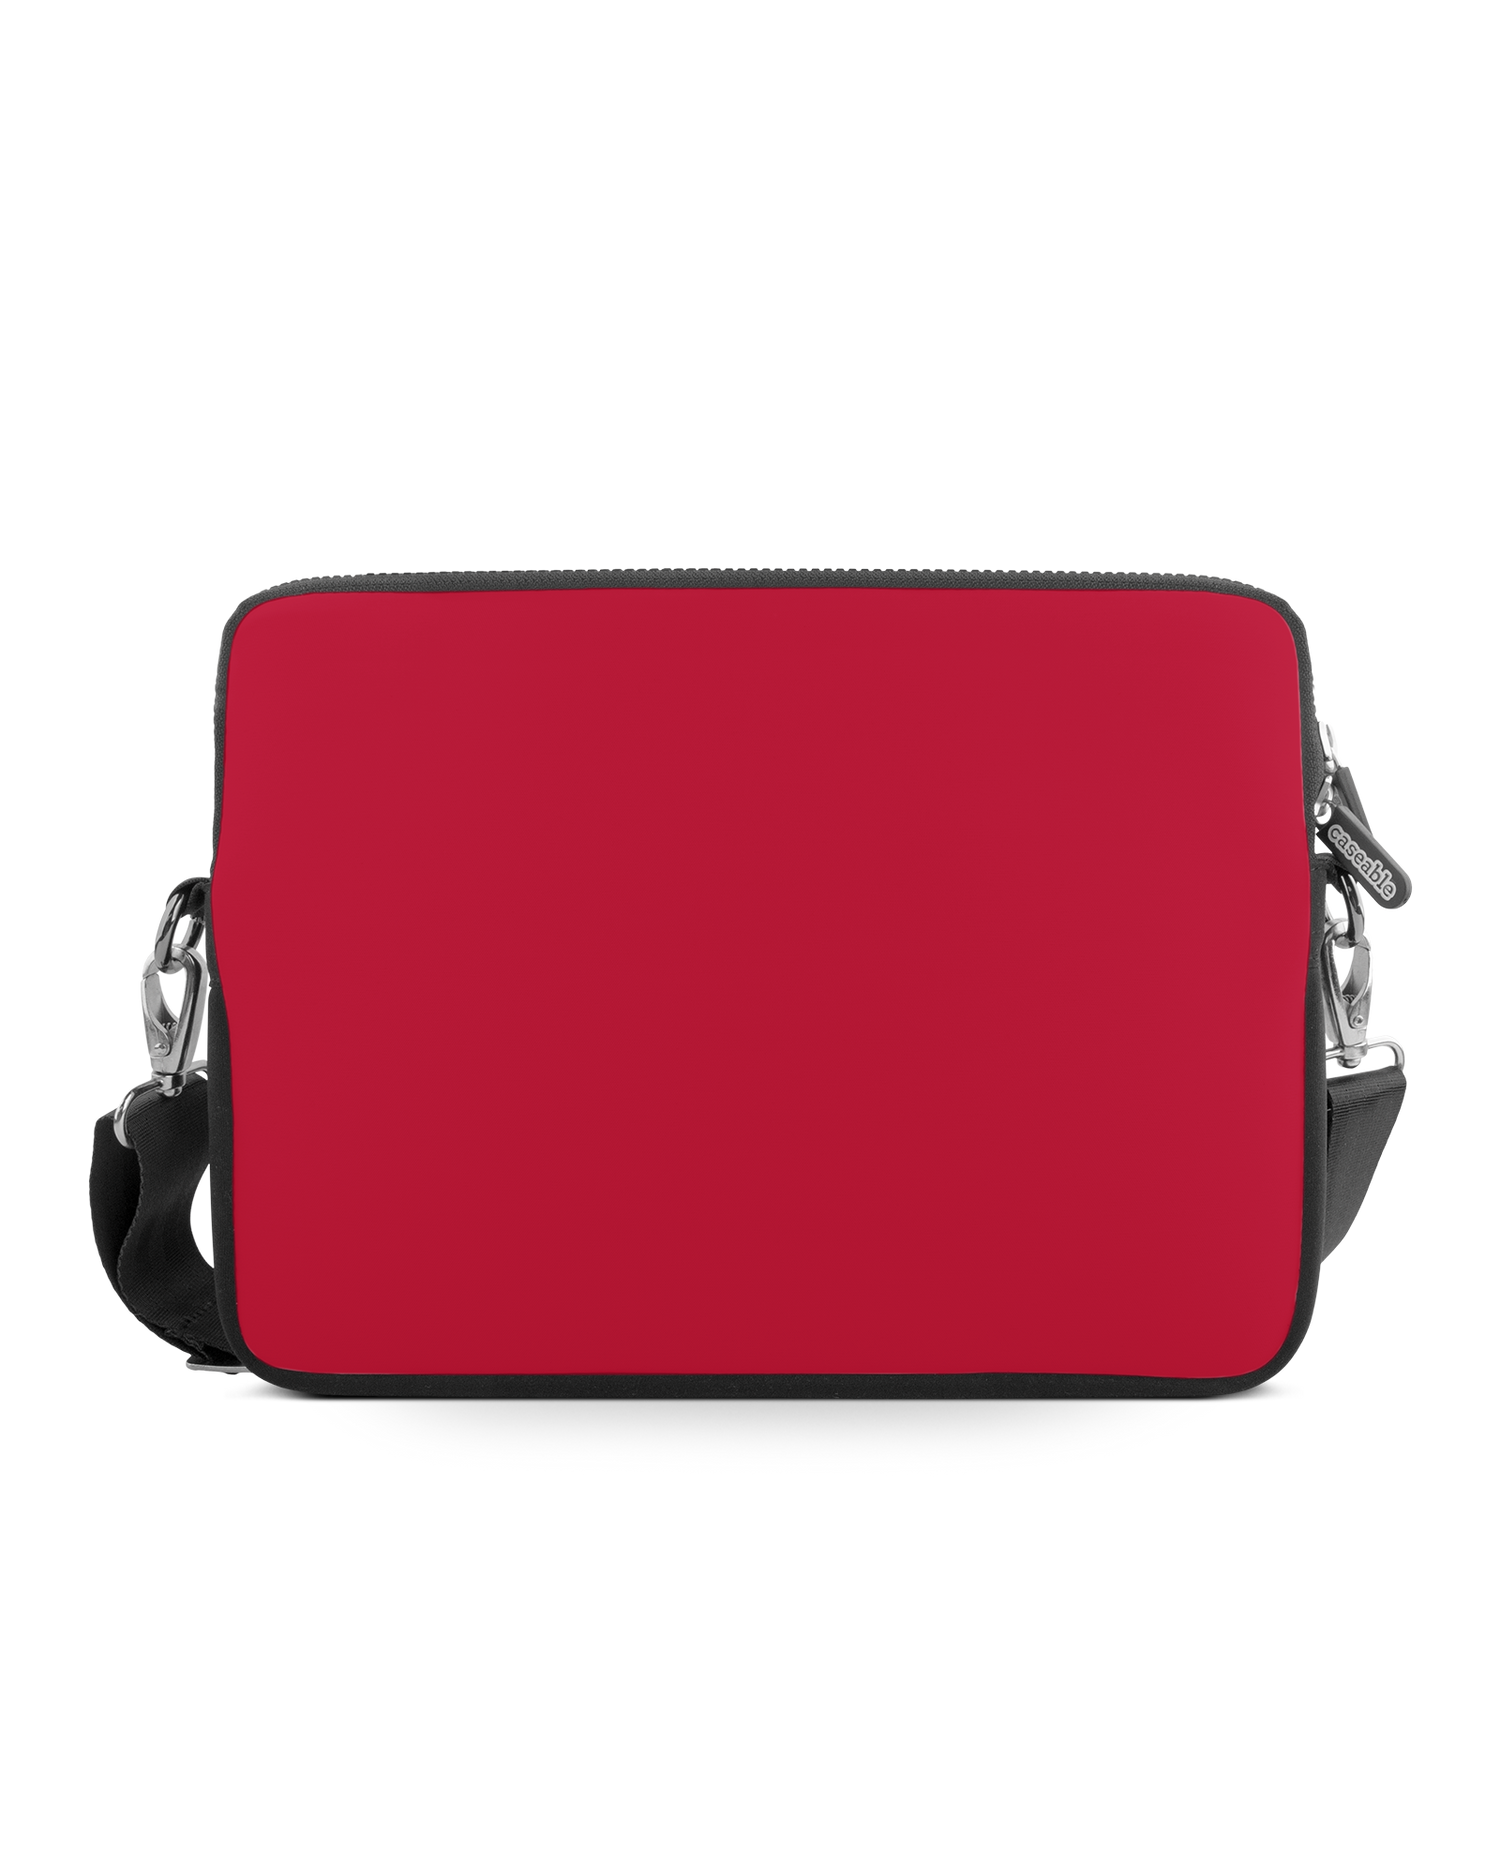 RED Premium Laptoptasche 15 Zoll: Vorderansicht